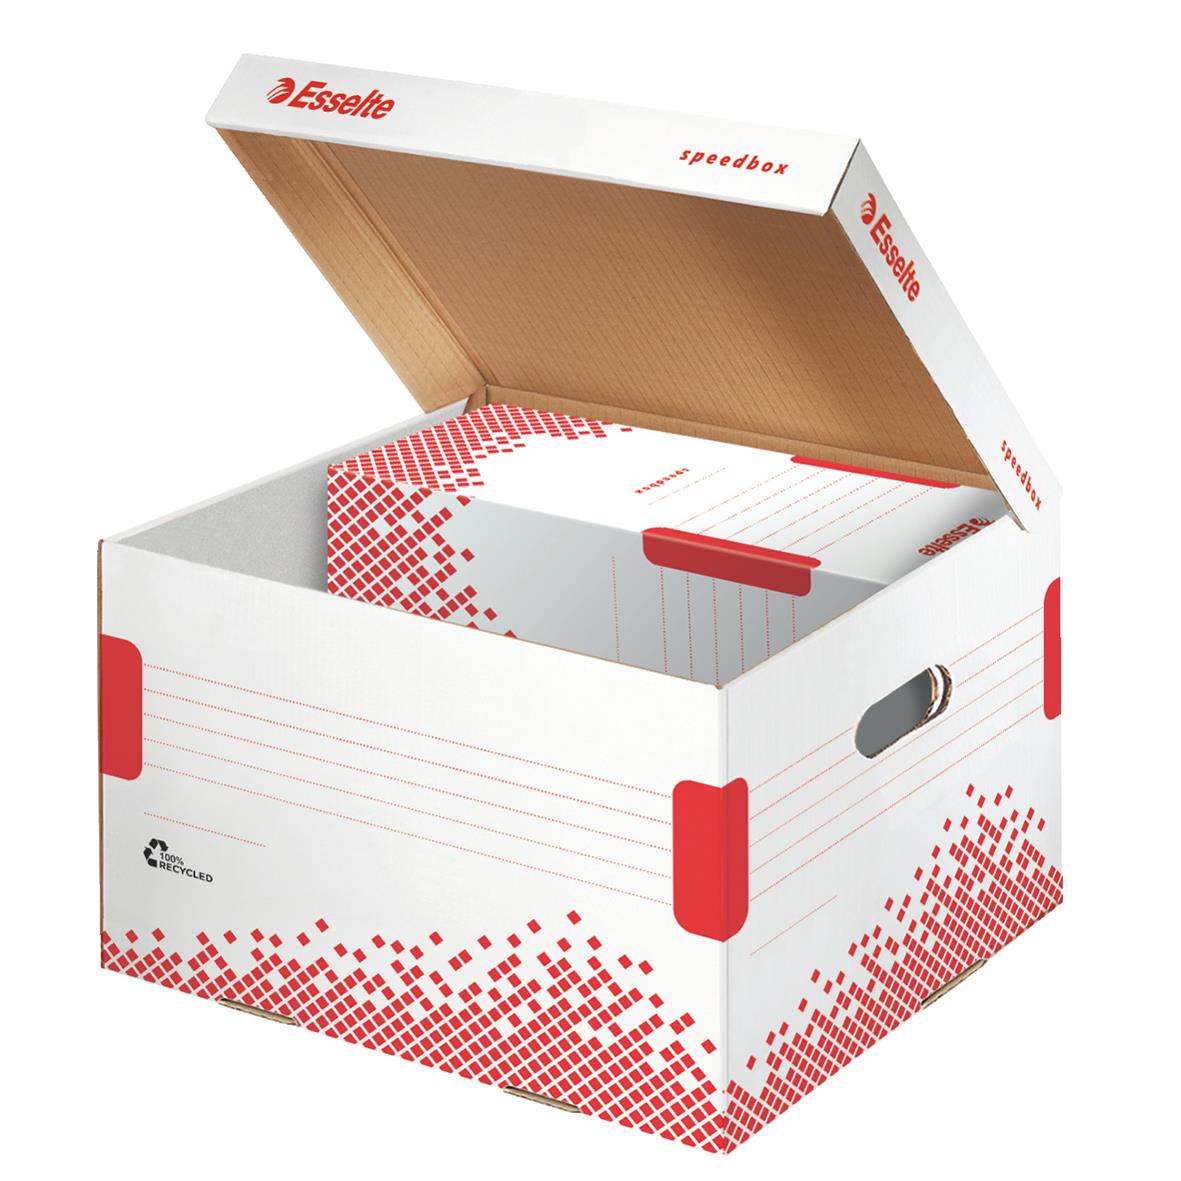 Arkivbox Esselte Speedbox medium 11220020_2